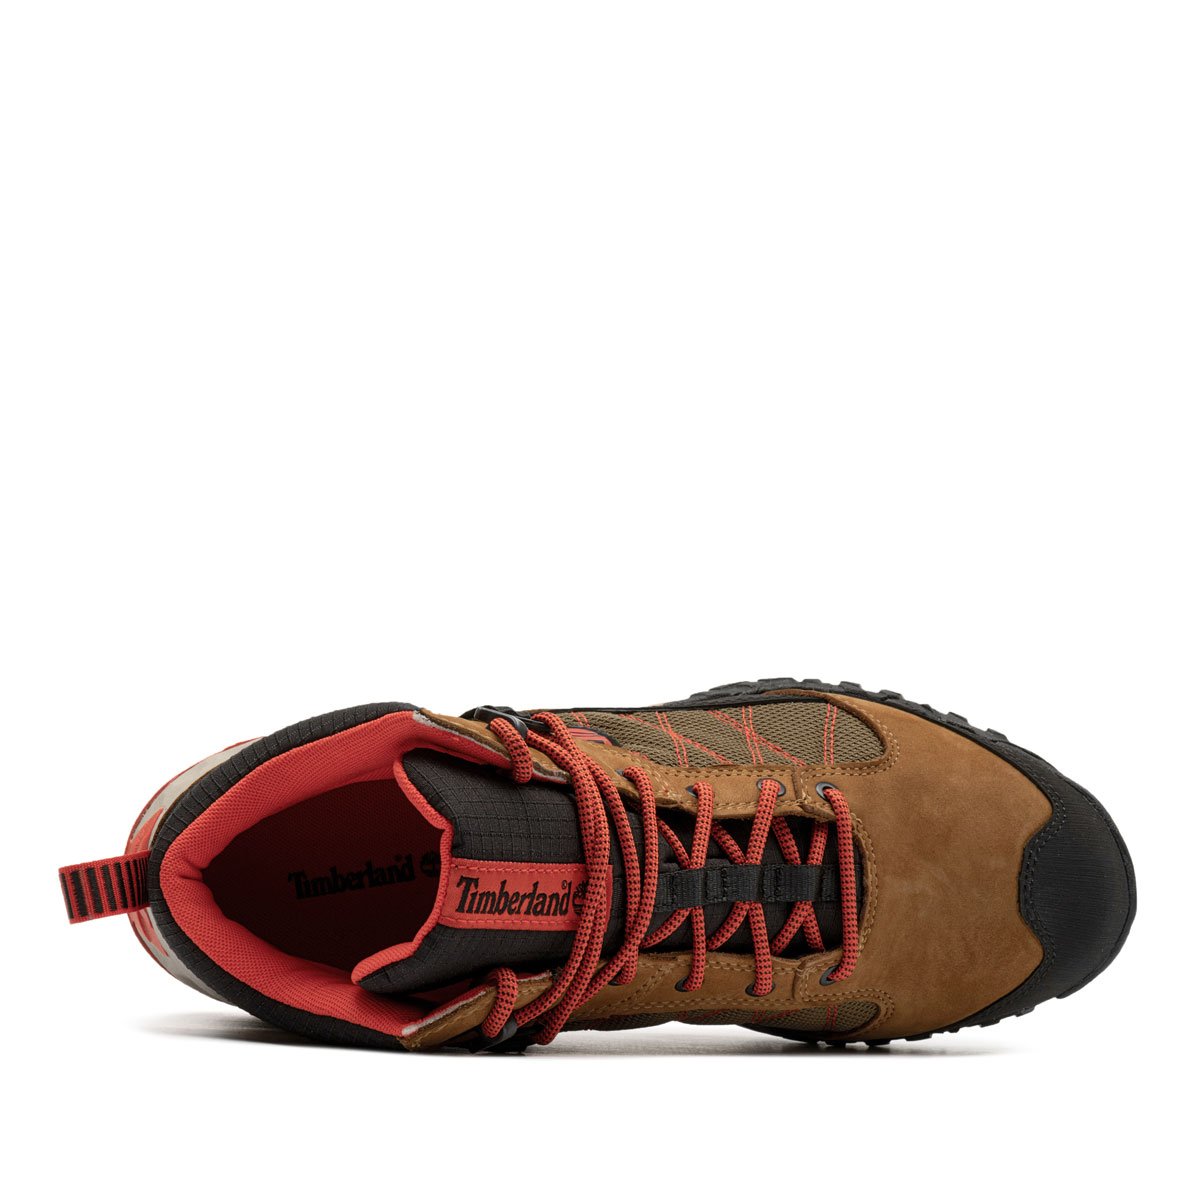 Timberland Trailquest Waterproof Mid Мъжки спортни обувки 0A2P7J